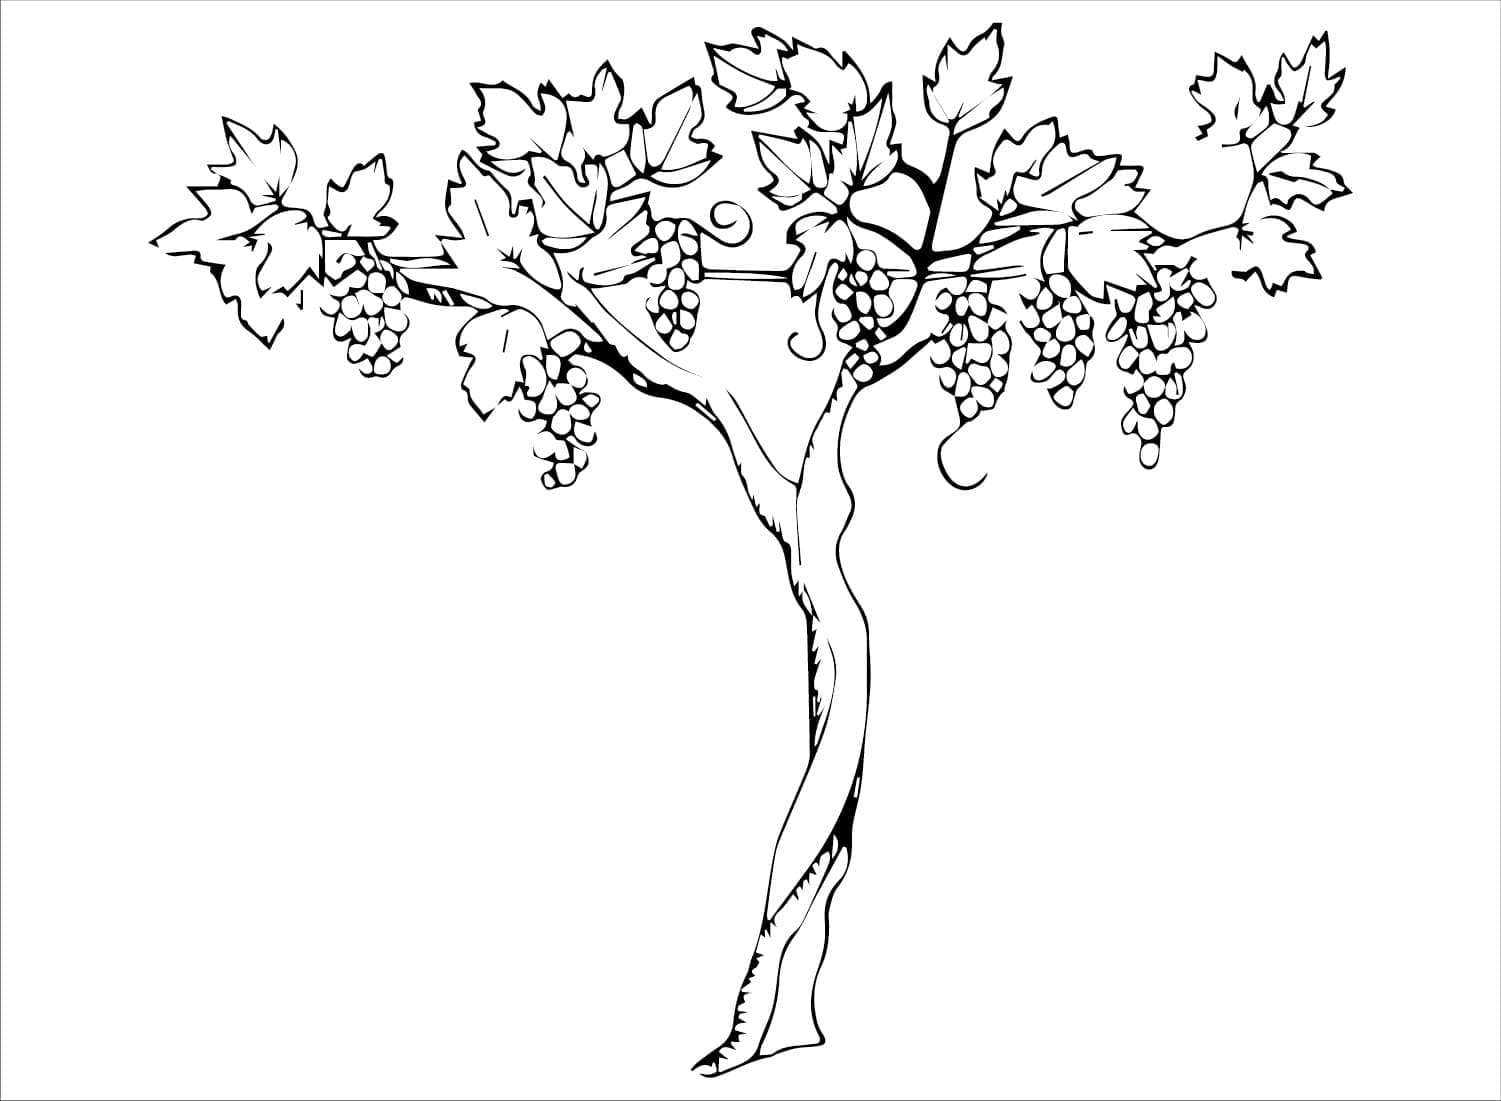 Plante de Raisin coloring page